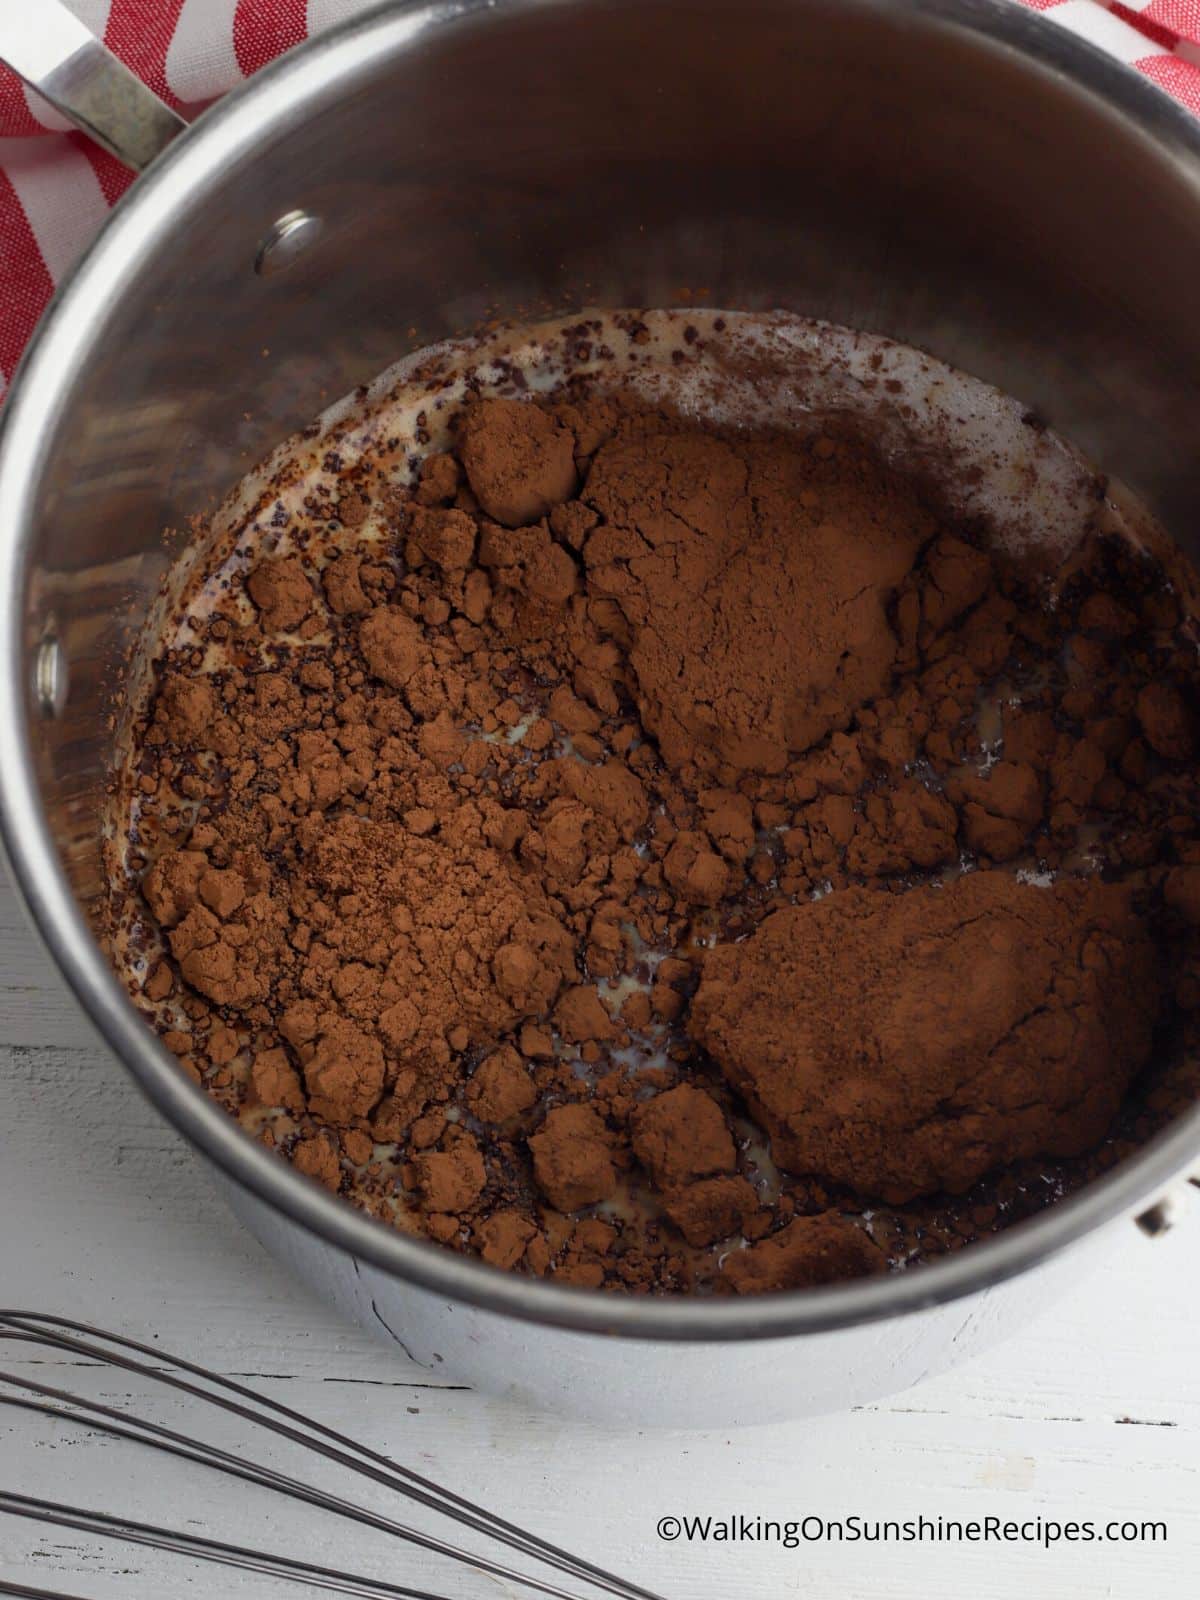 Add cocoa powder to hot milk.